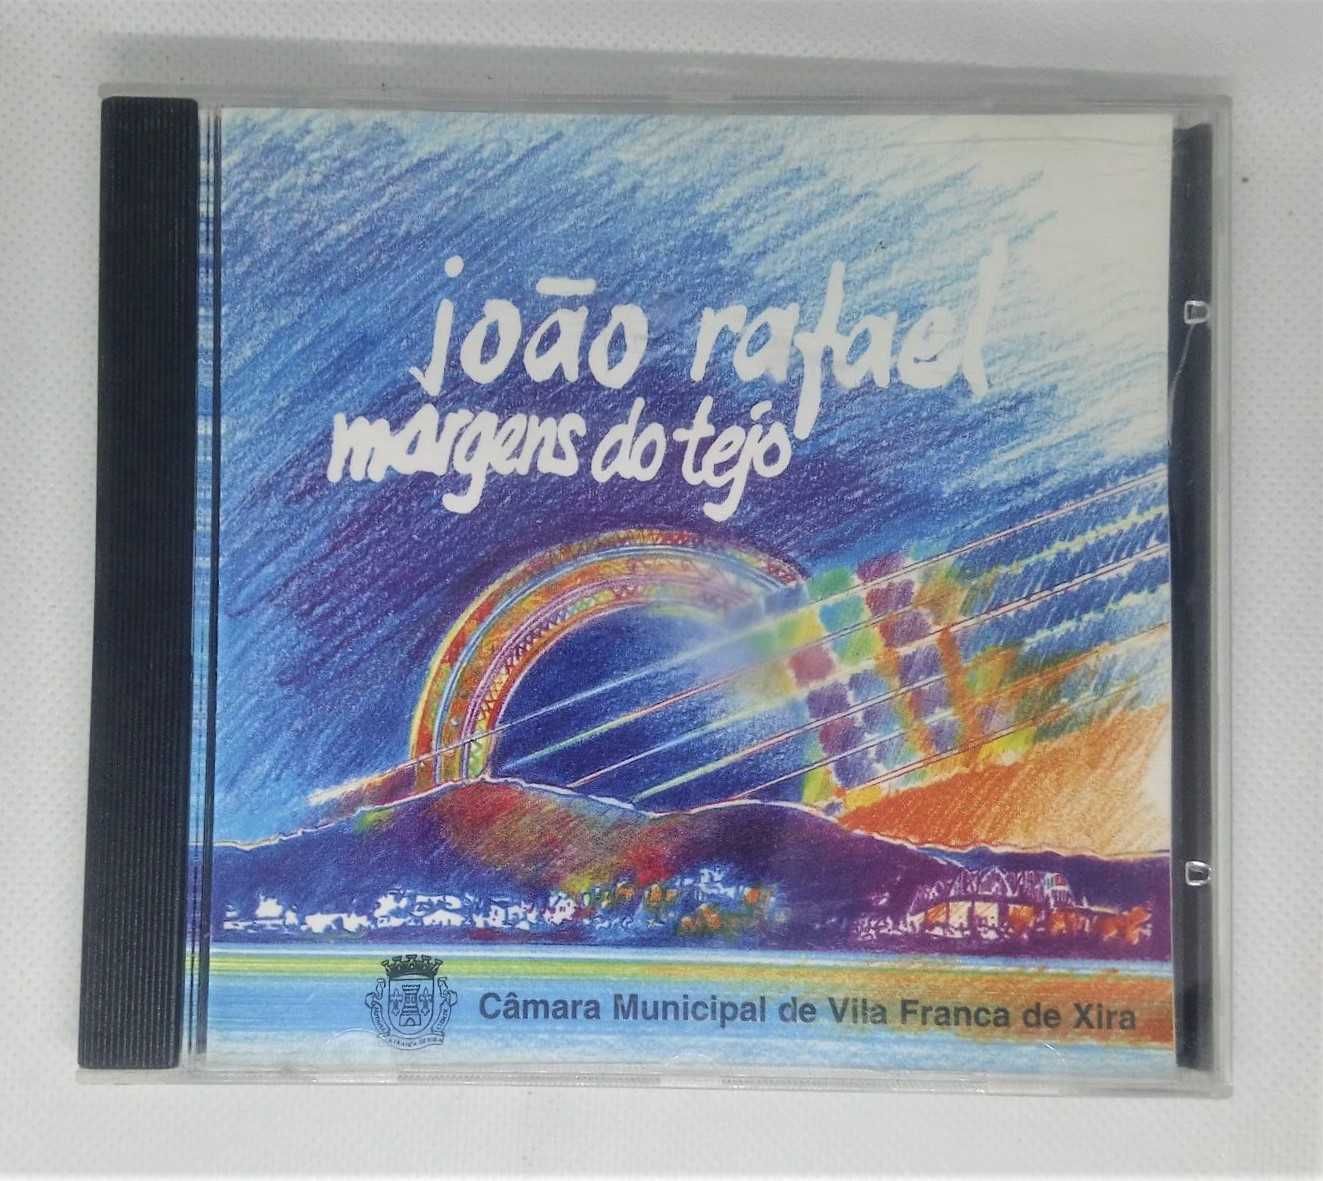 CD João Rafael - margens do Tejo, Bom estado